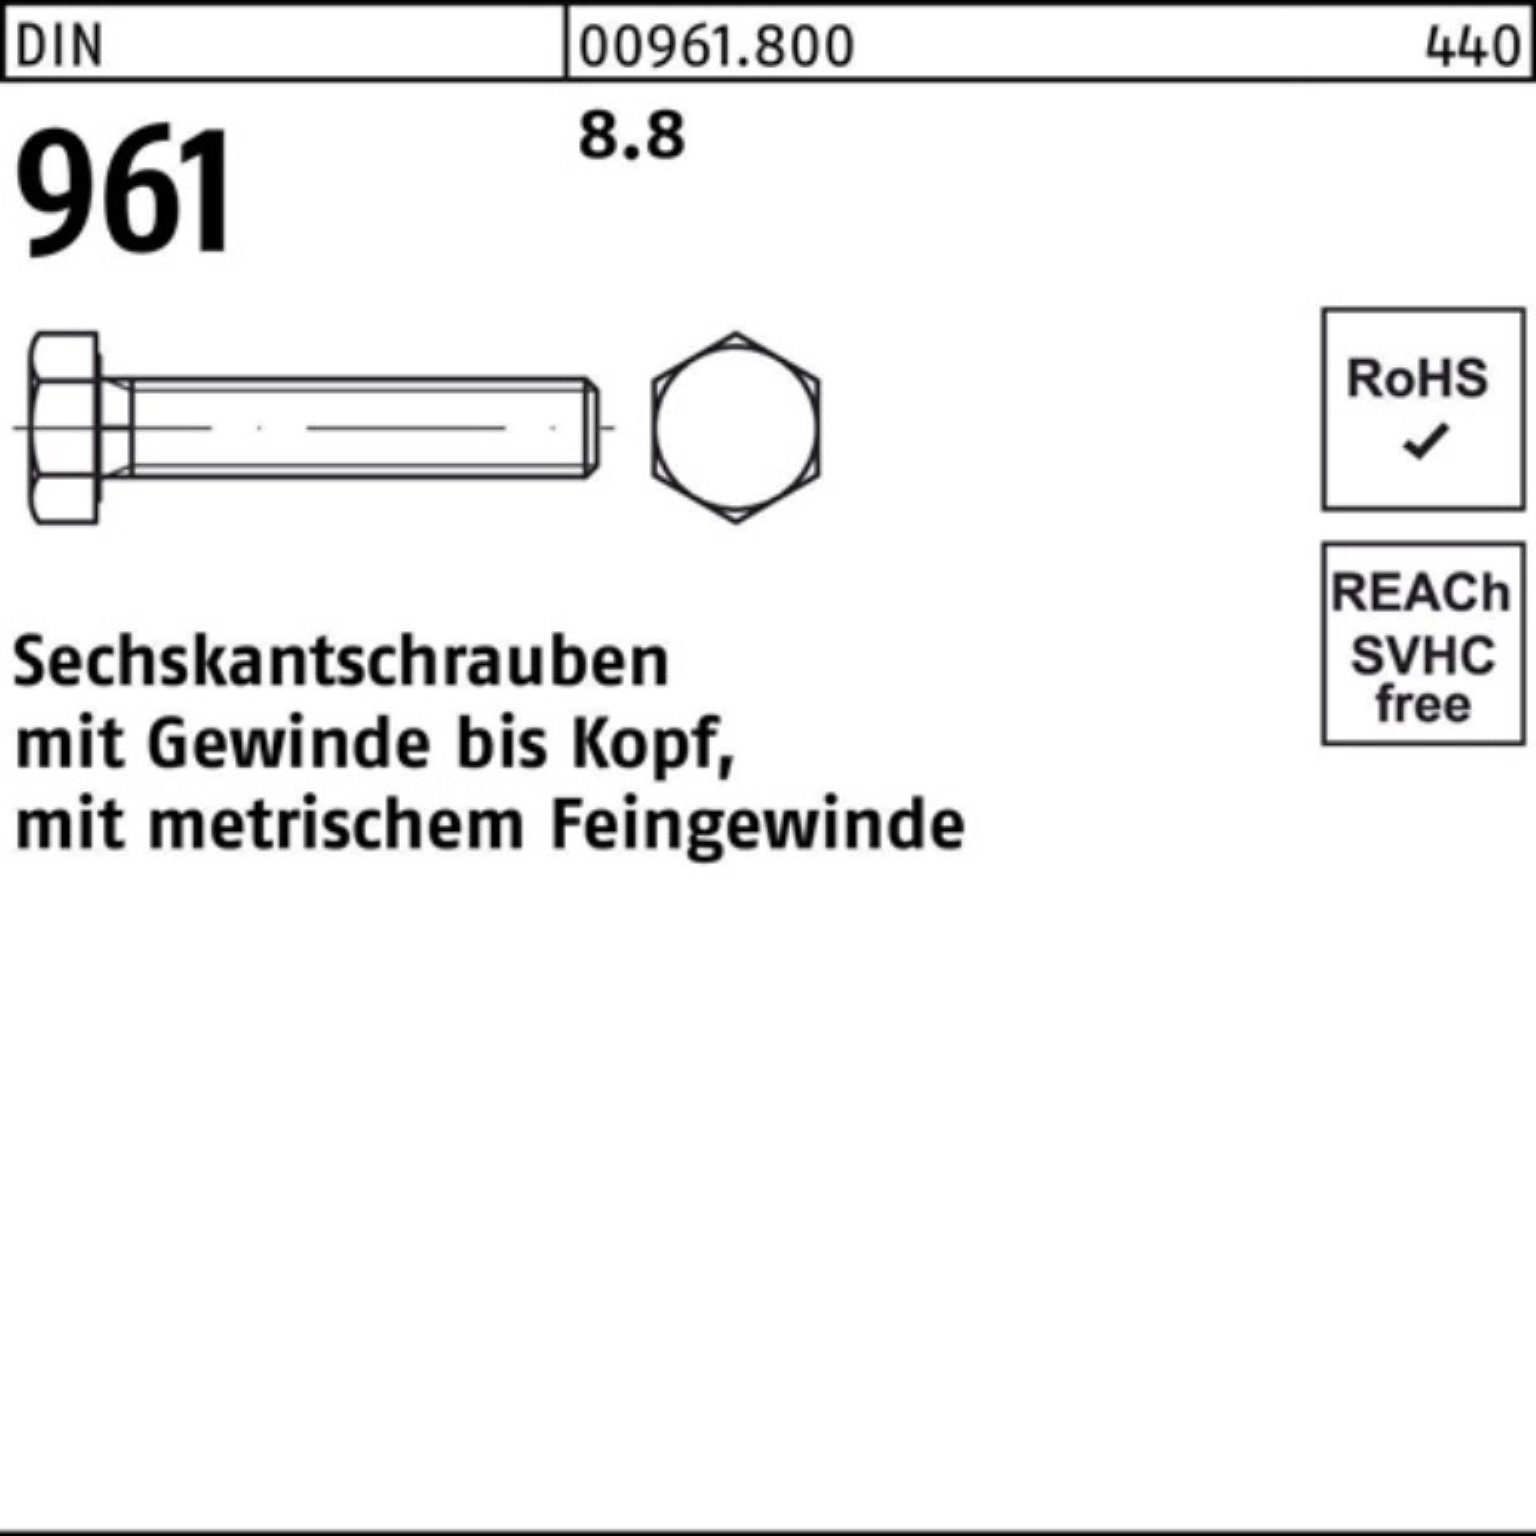 Stück DIN 961 961 100er Reyher DIN Sechskantschraube Sechskantschraube M36x3x110 Pack 1 8.8 VG